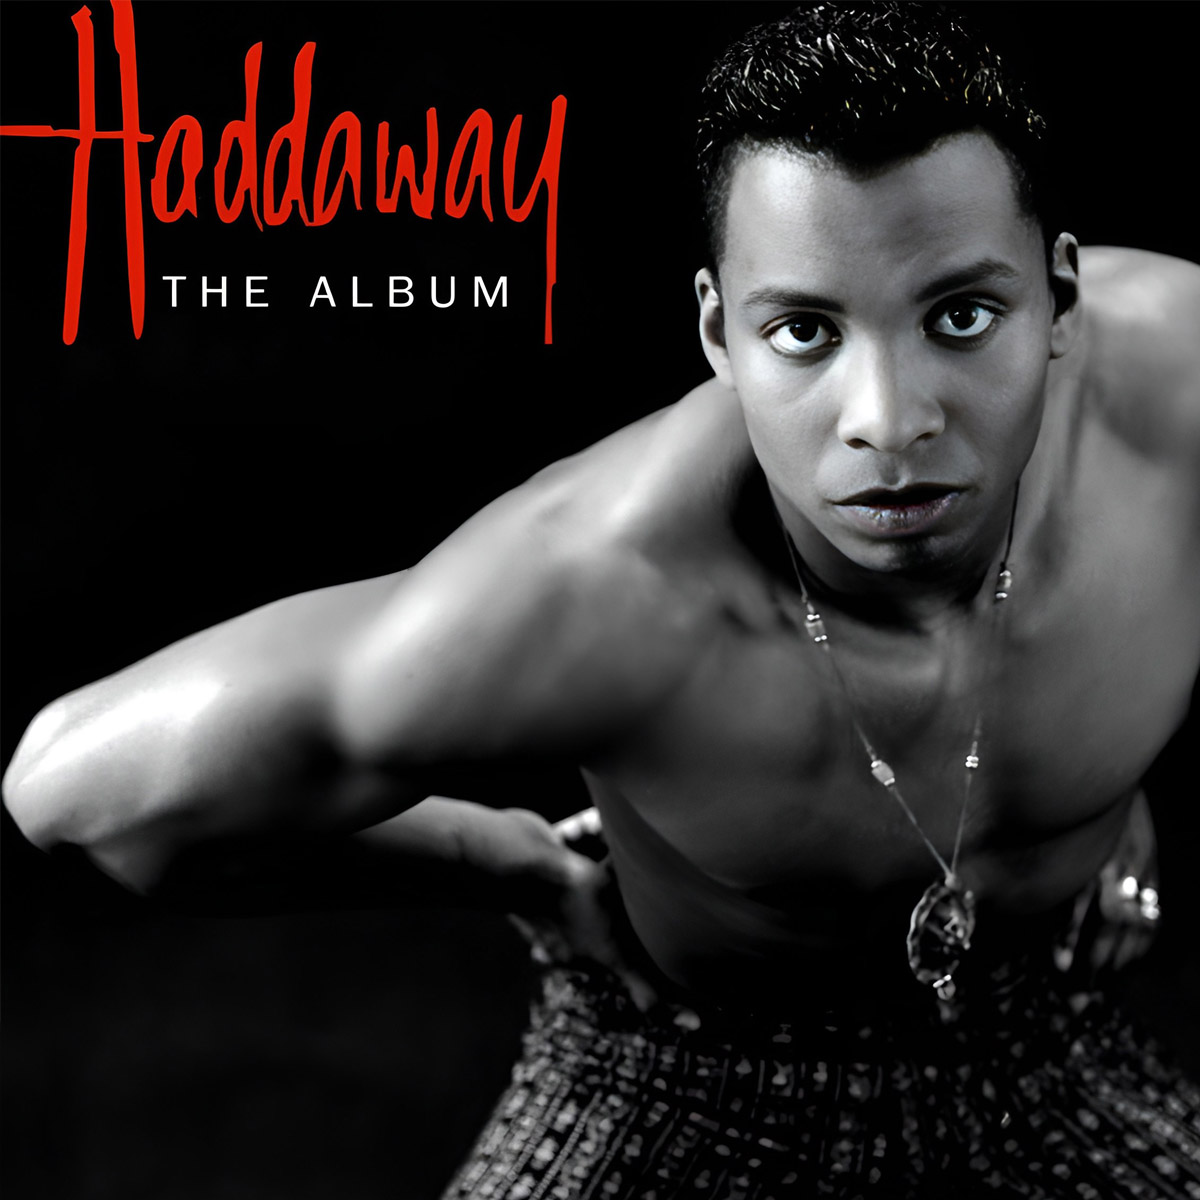 Arte da capa do álbum de estréia de Haddaway